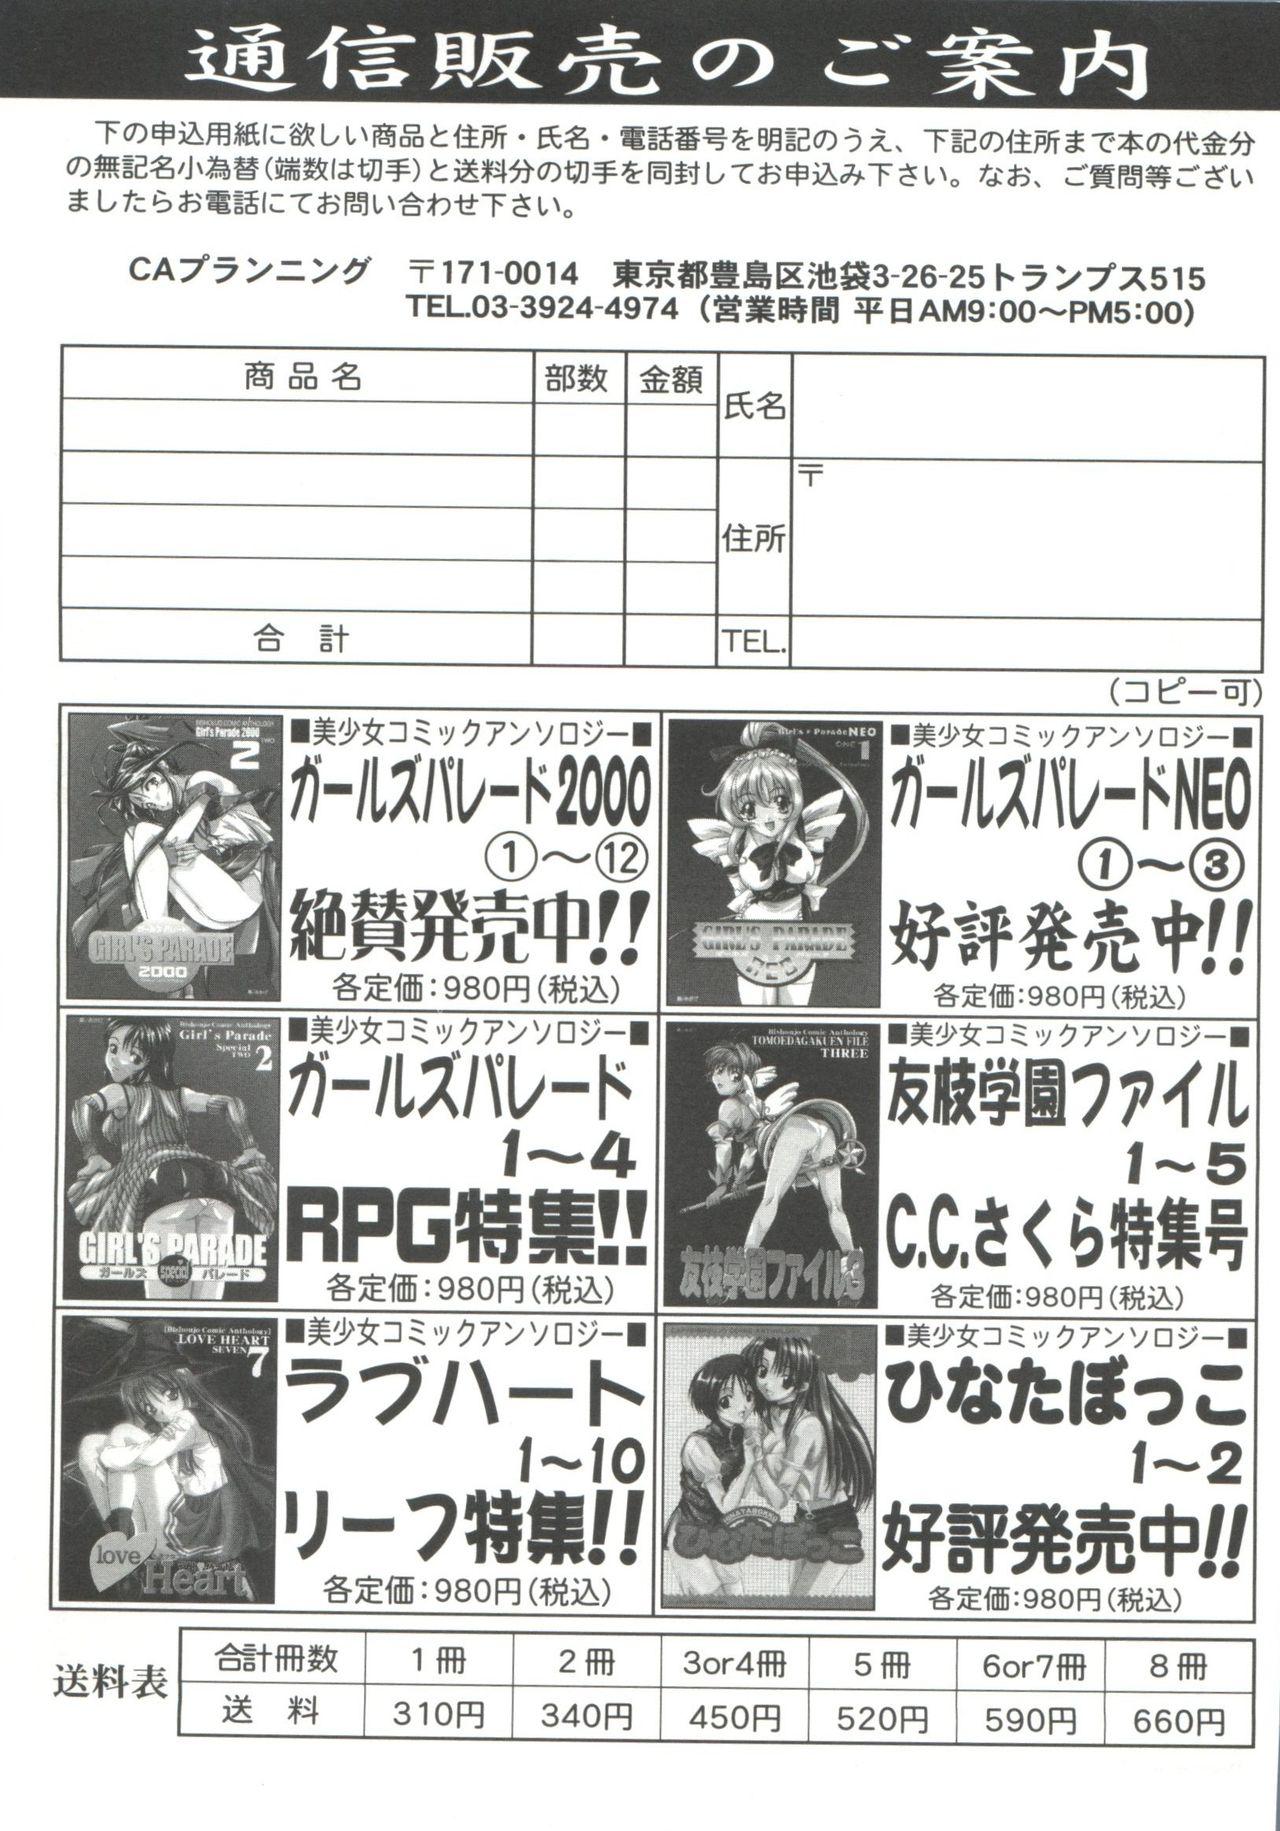 Stretching Tomoeda Gakuen File 5 - Cardcaptor sakura Dyke - Page 187